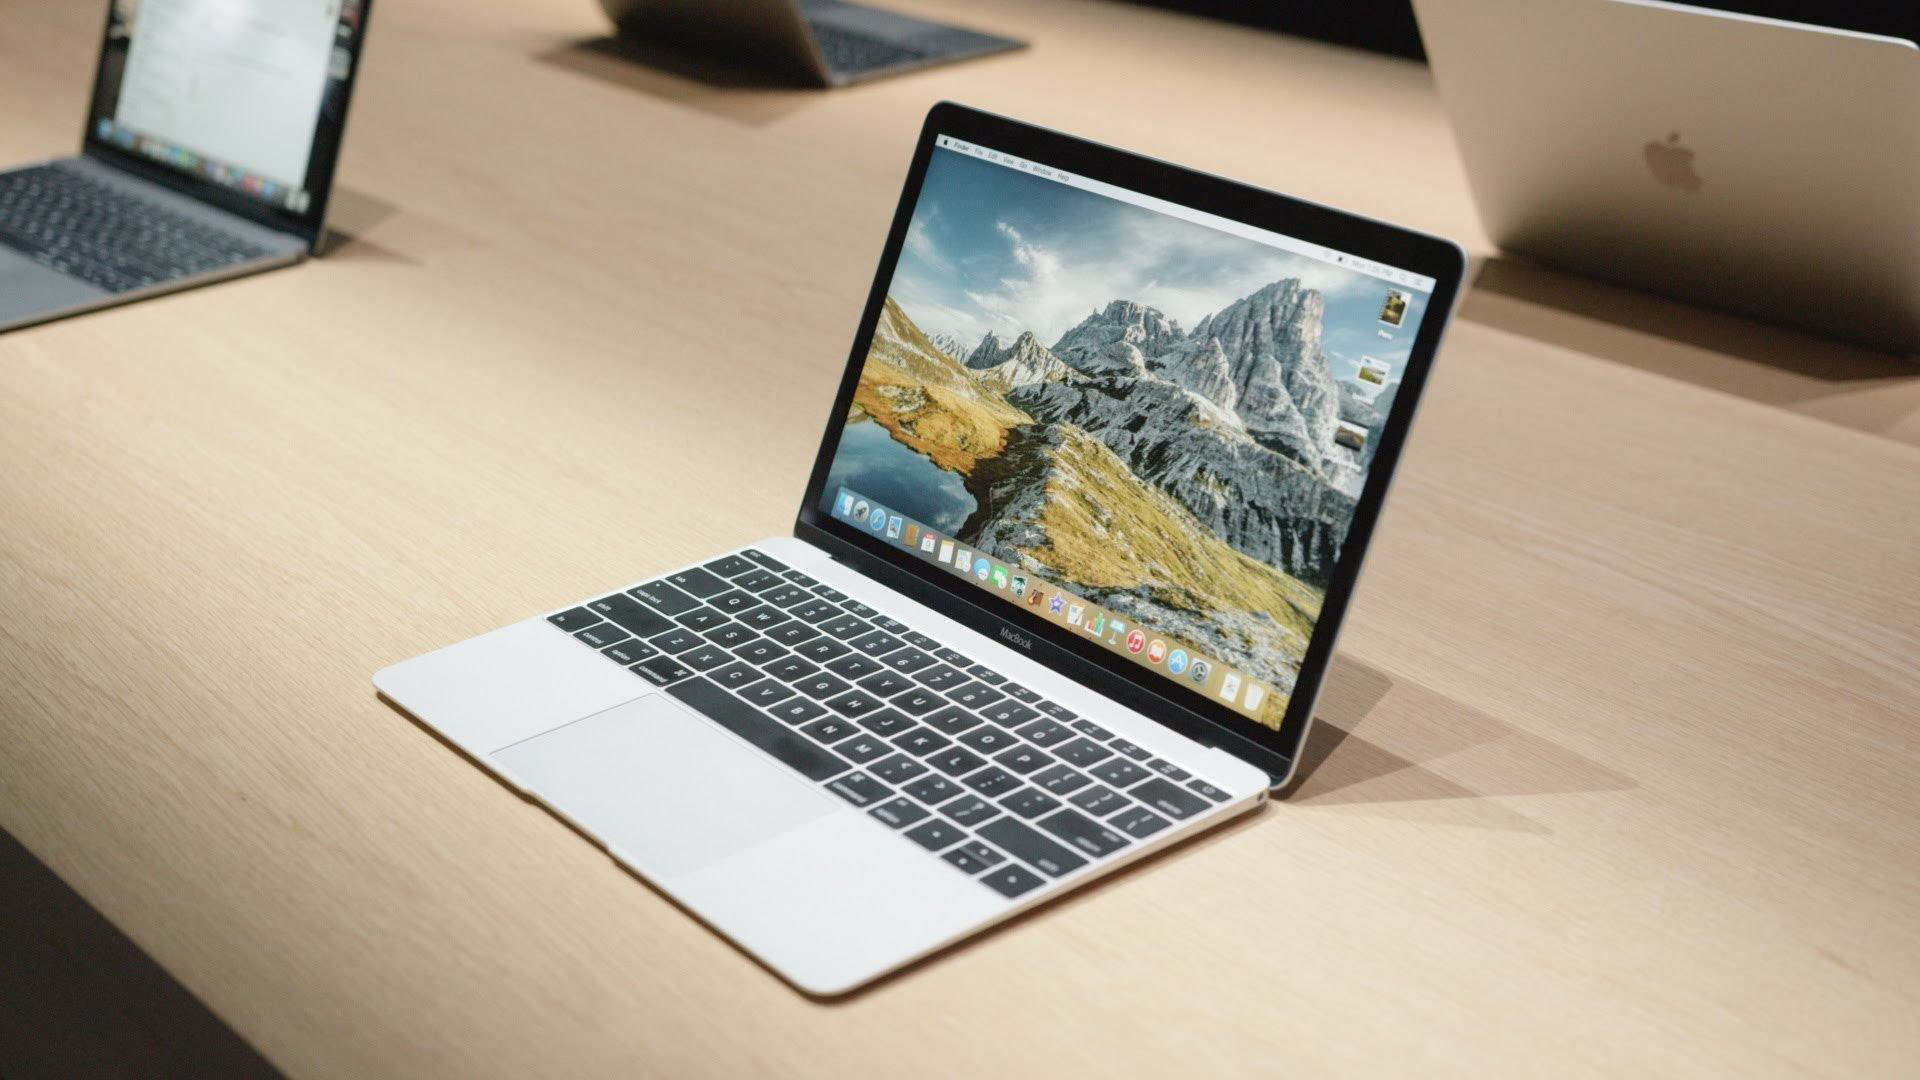 6988元超薄笔记本电脑MacBook Air配置 苹果笔记本推荐